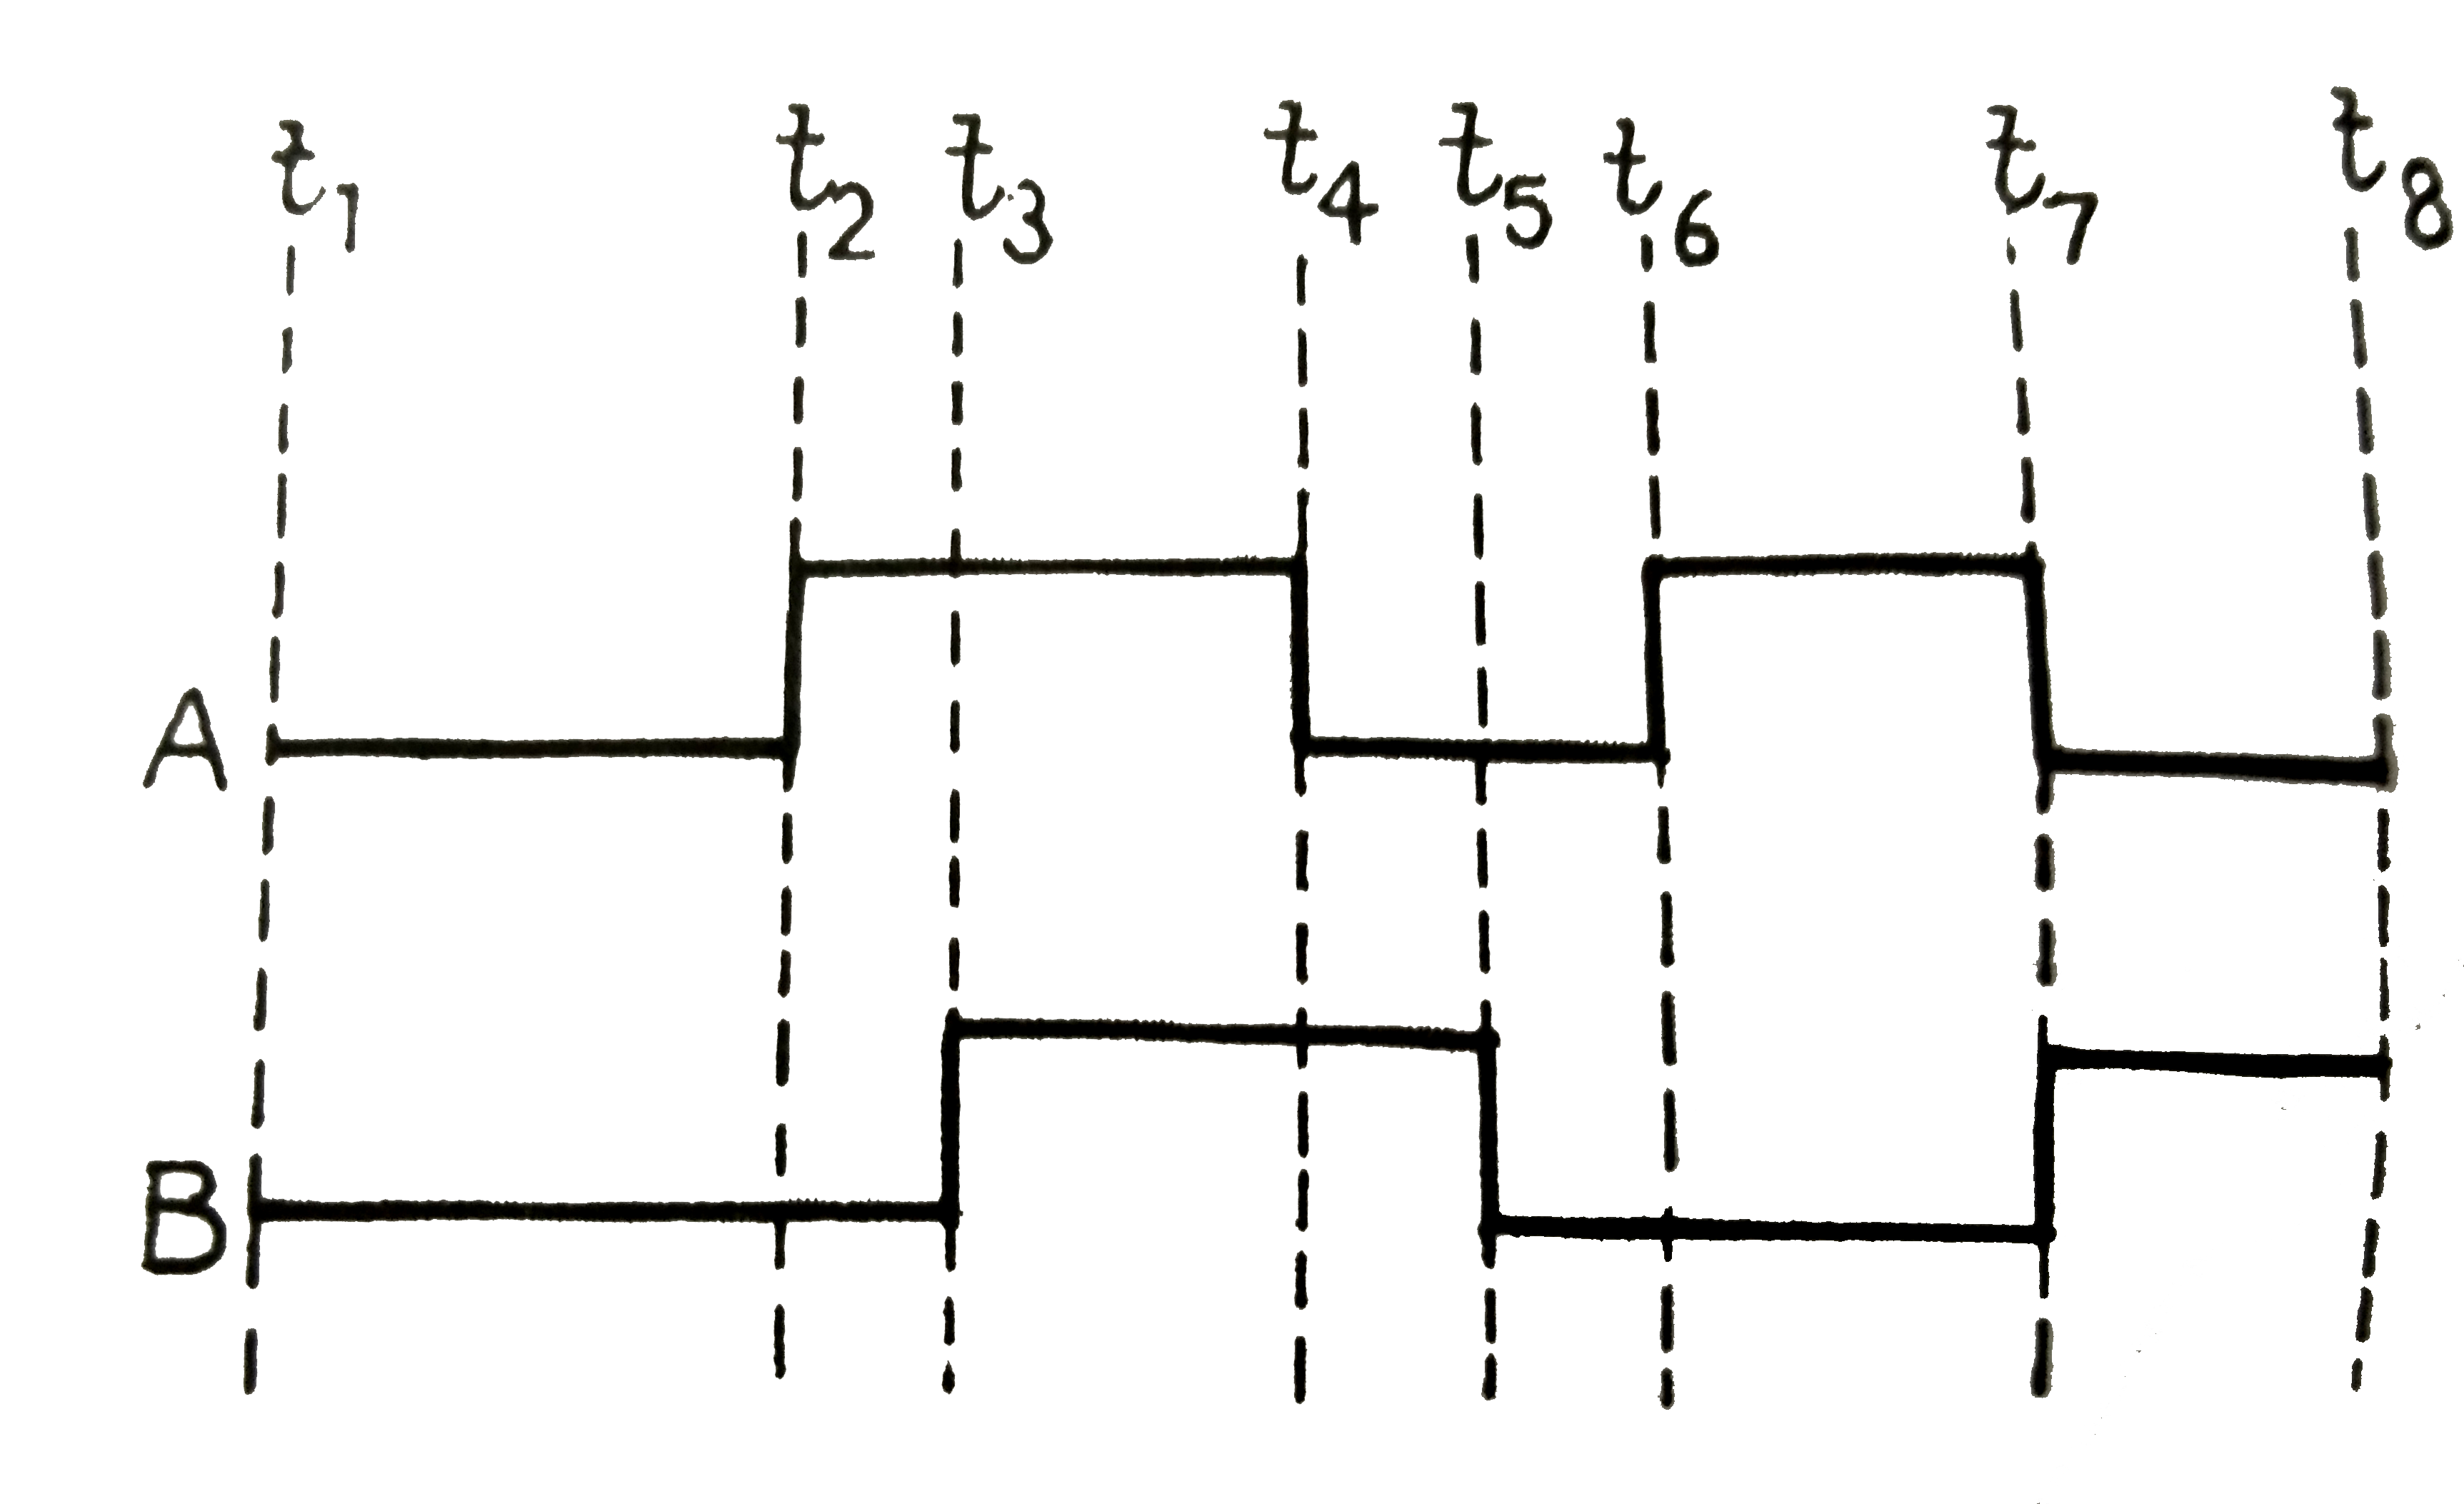 A व B, OR  गेट तथा NAND गेट के निवेशी तरंग प्रतिरूप चित्र में प्रदर्शित है । दोनों गेटों के निर्गत प्रतिरूप (Y) दर्शाइये ।